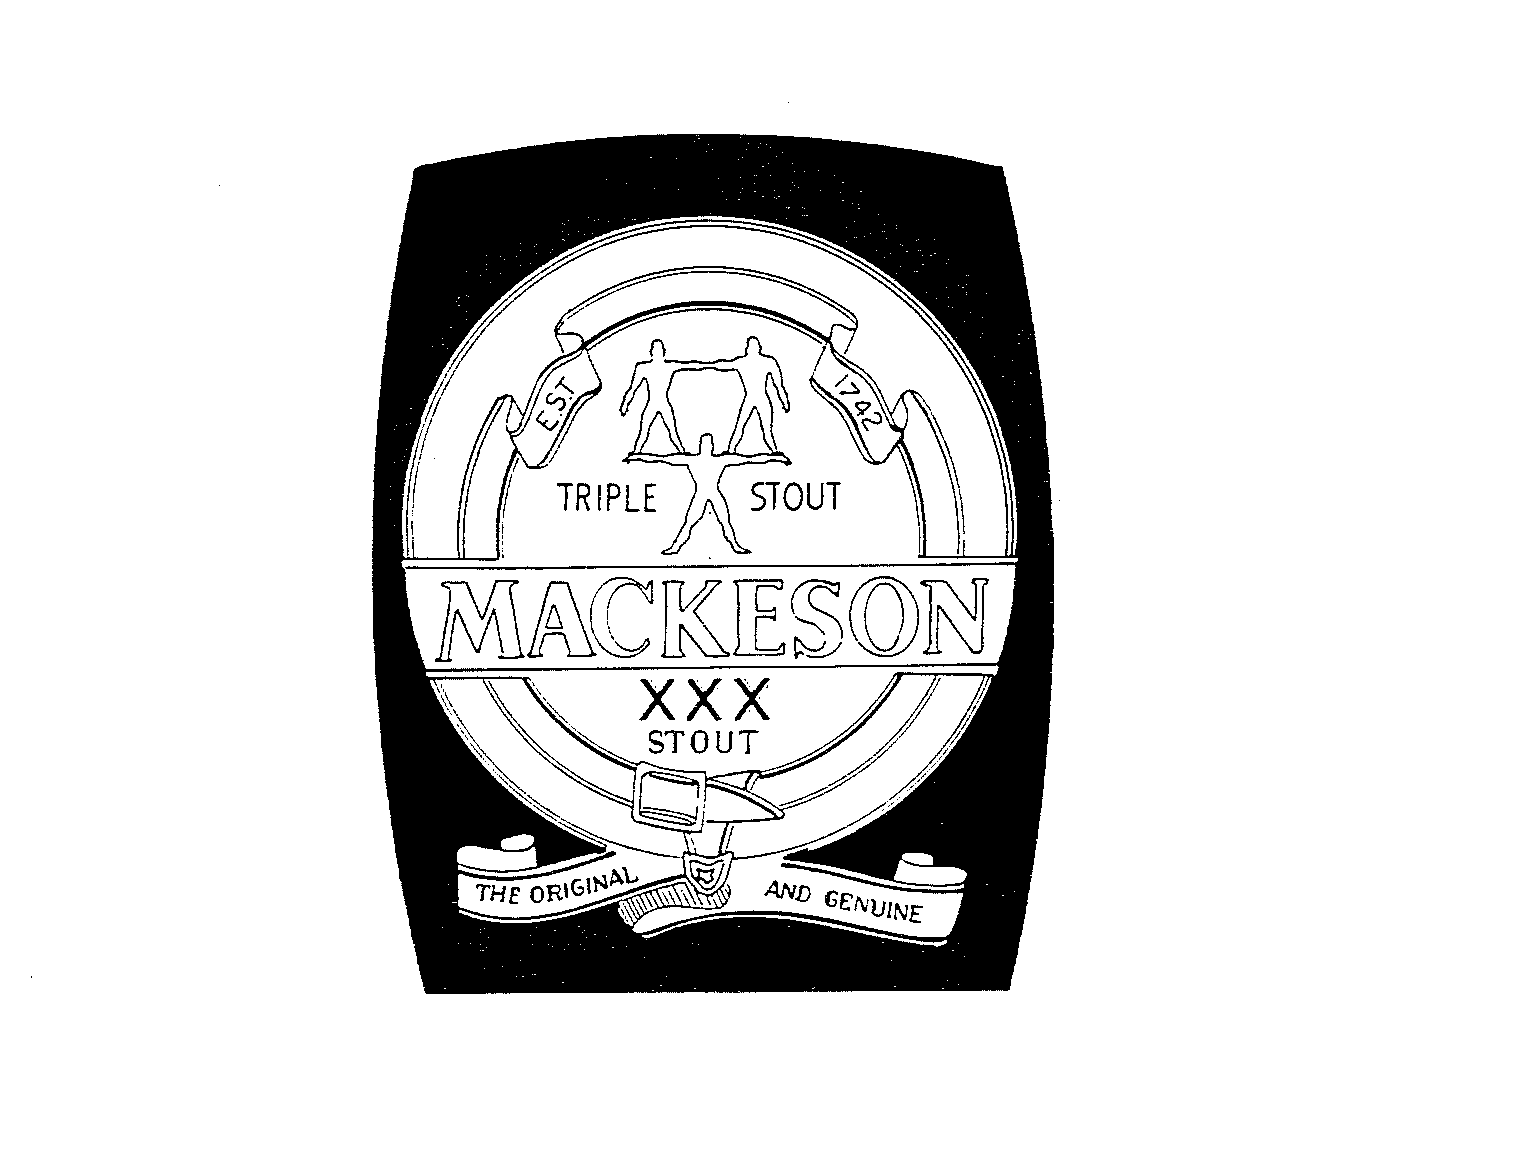  EST 1742 TRIPLE STOUT MACKESON XXX STOUTTHE ORIGINAL AND GENUINE